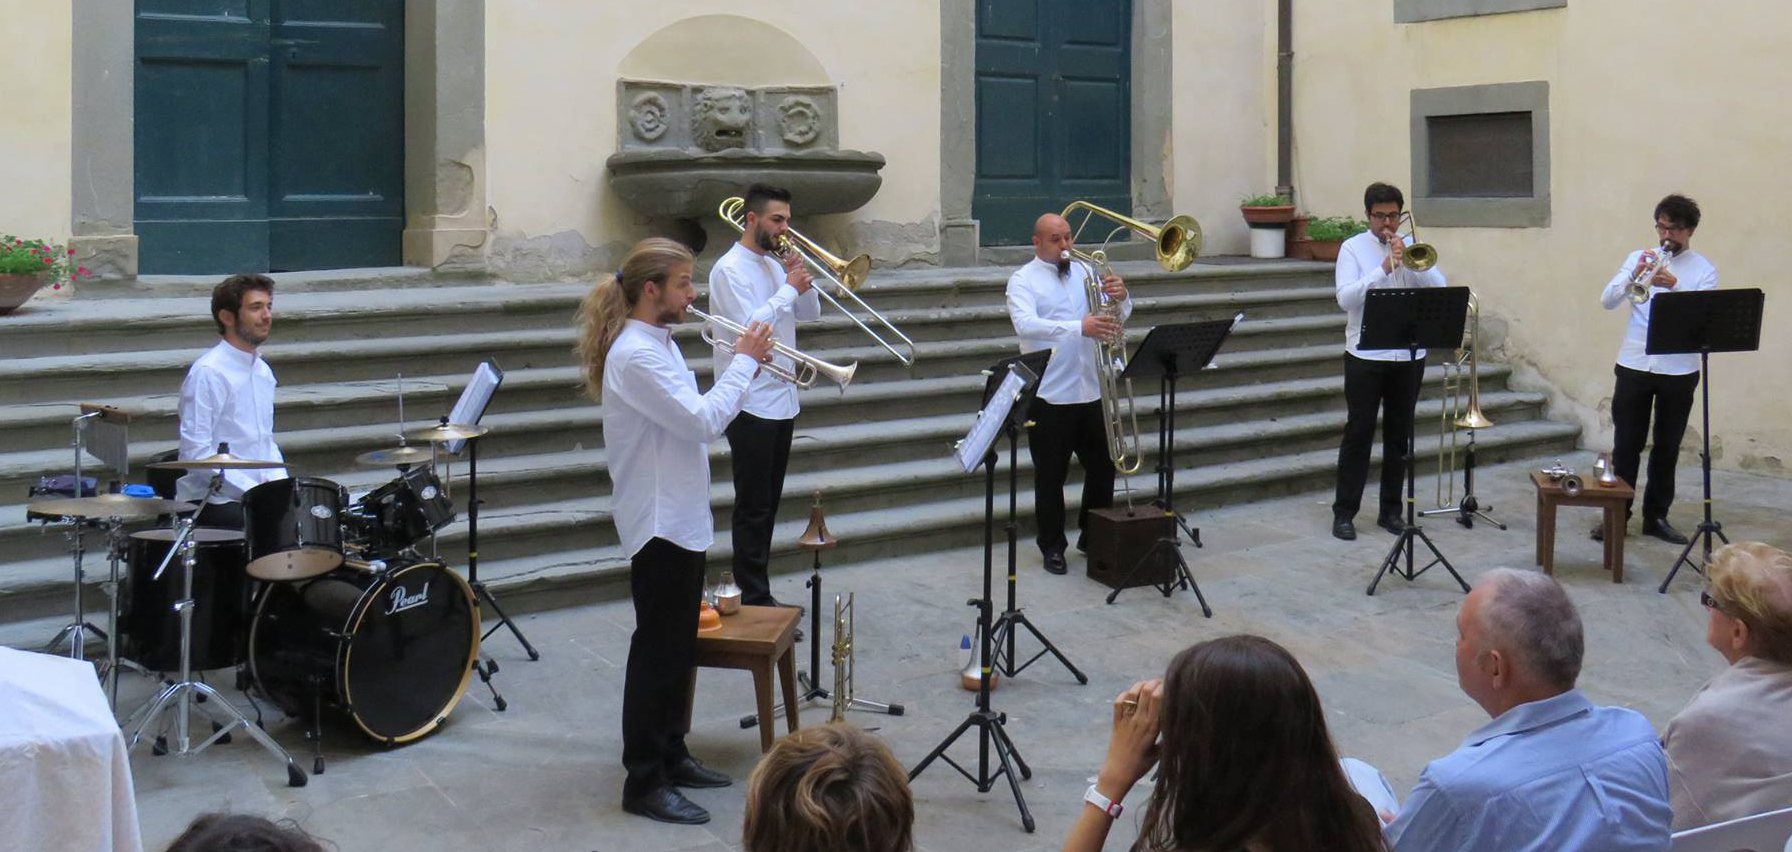 Auditorium Le Fornaci, “Tra classica e pop” il Bright Brass Quintet & Percussion in concerto